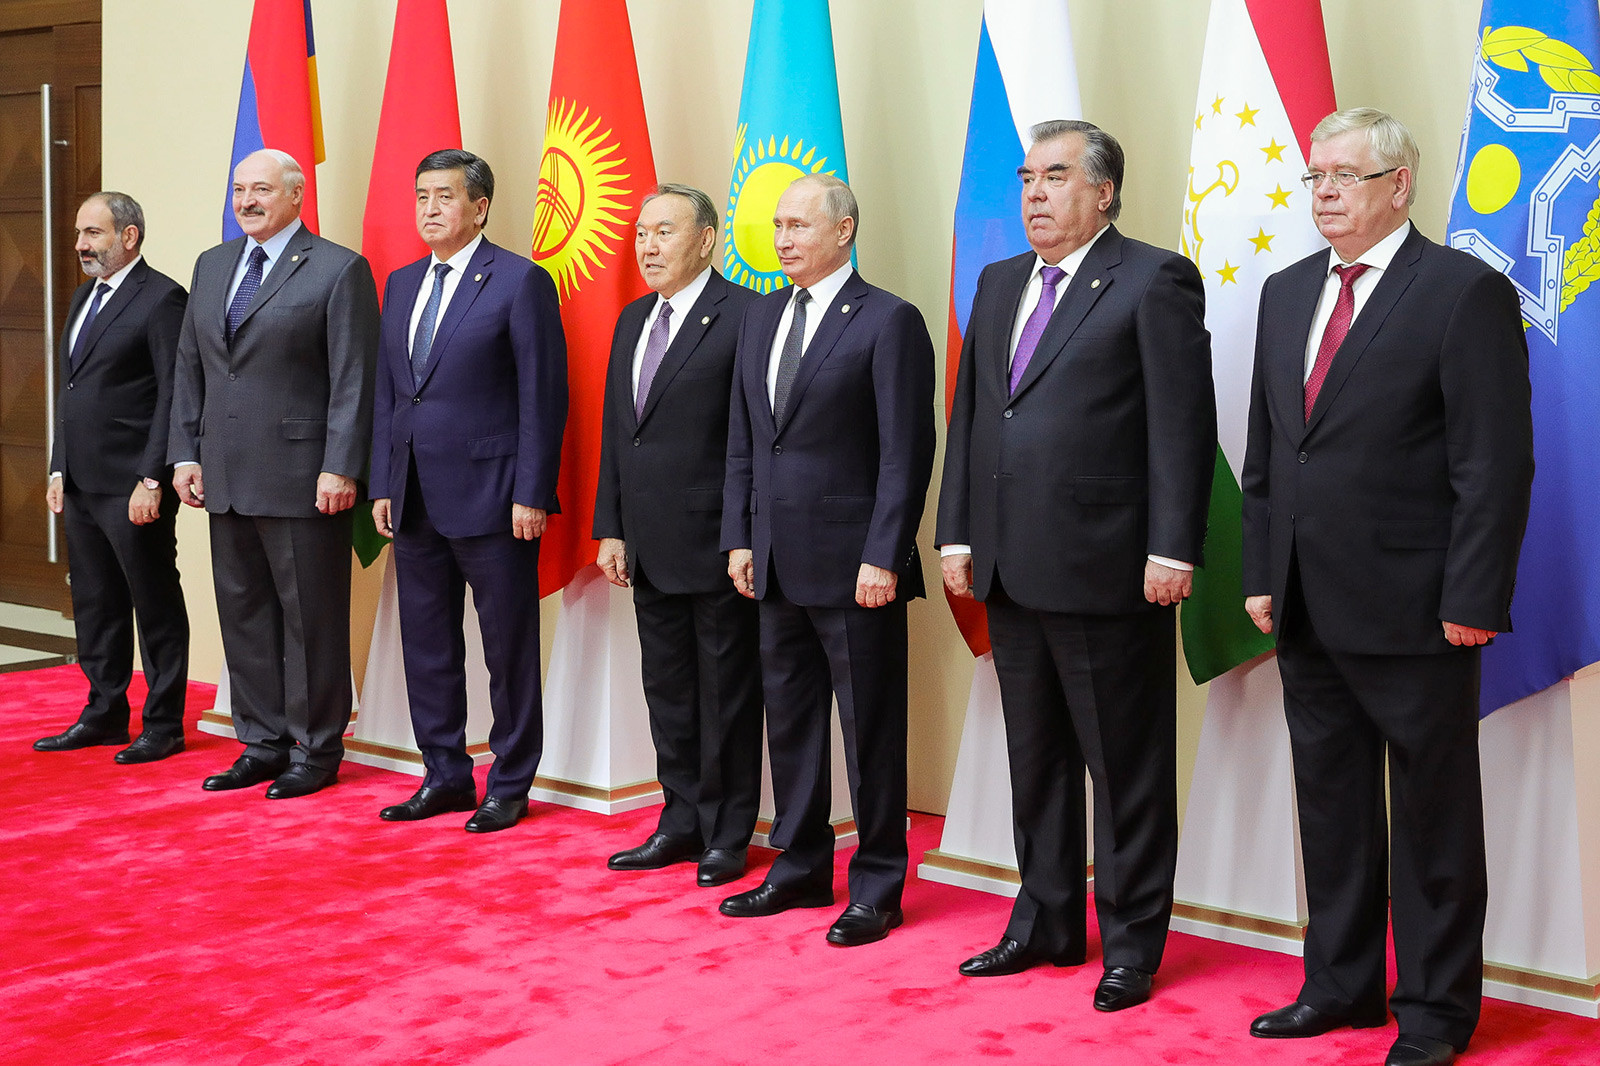 アルメニア大統領候補、ニコル・パシニャン、ベラルーシ大統領アレクサンドル・ルカシェンコ、キルギスの大統領ソーロンバイ・ジェーンベコフ、カザフスタン大統領ヌルスルタン・ナザルバエフ、ロシア大統領ウラジーミル・プーチン、タジキスタン大統領エモマリ・ラフモン、集団安全保障条約機構事務局長の代理者、ヴァレリー・セメリコフ。集団安全保障条約機構の加盟国代表団長の集合写真。